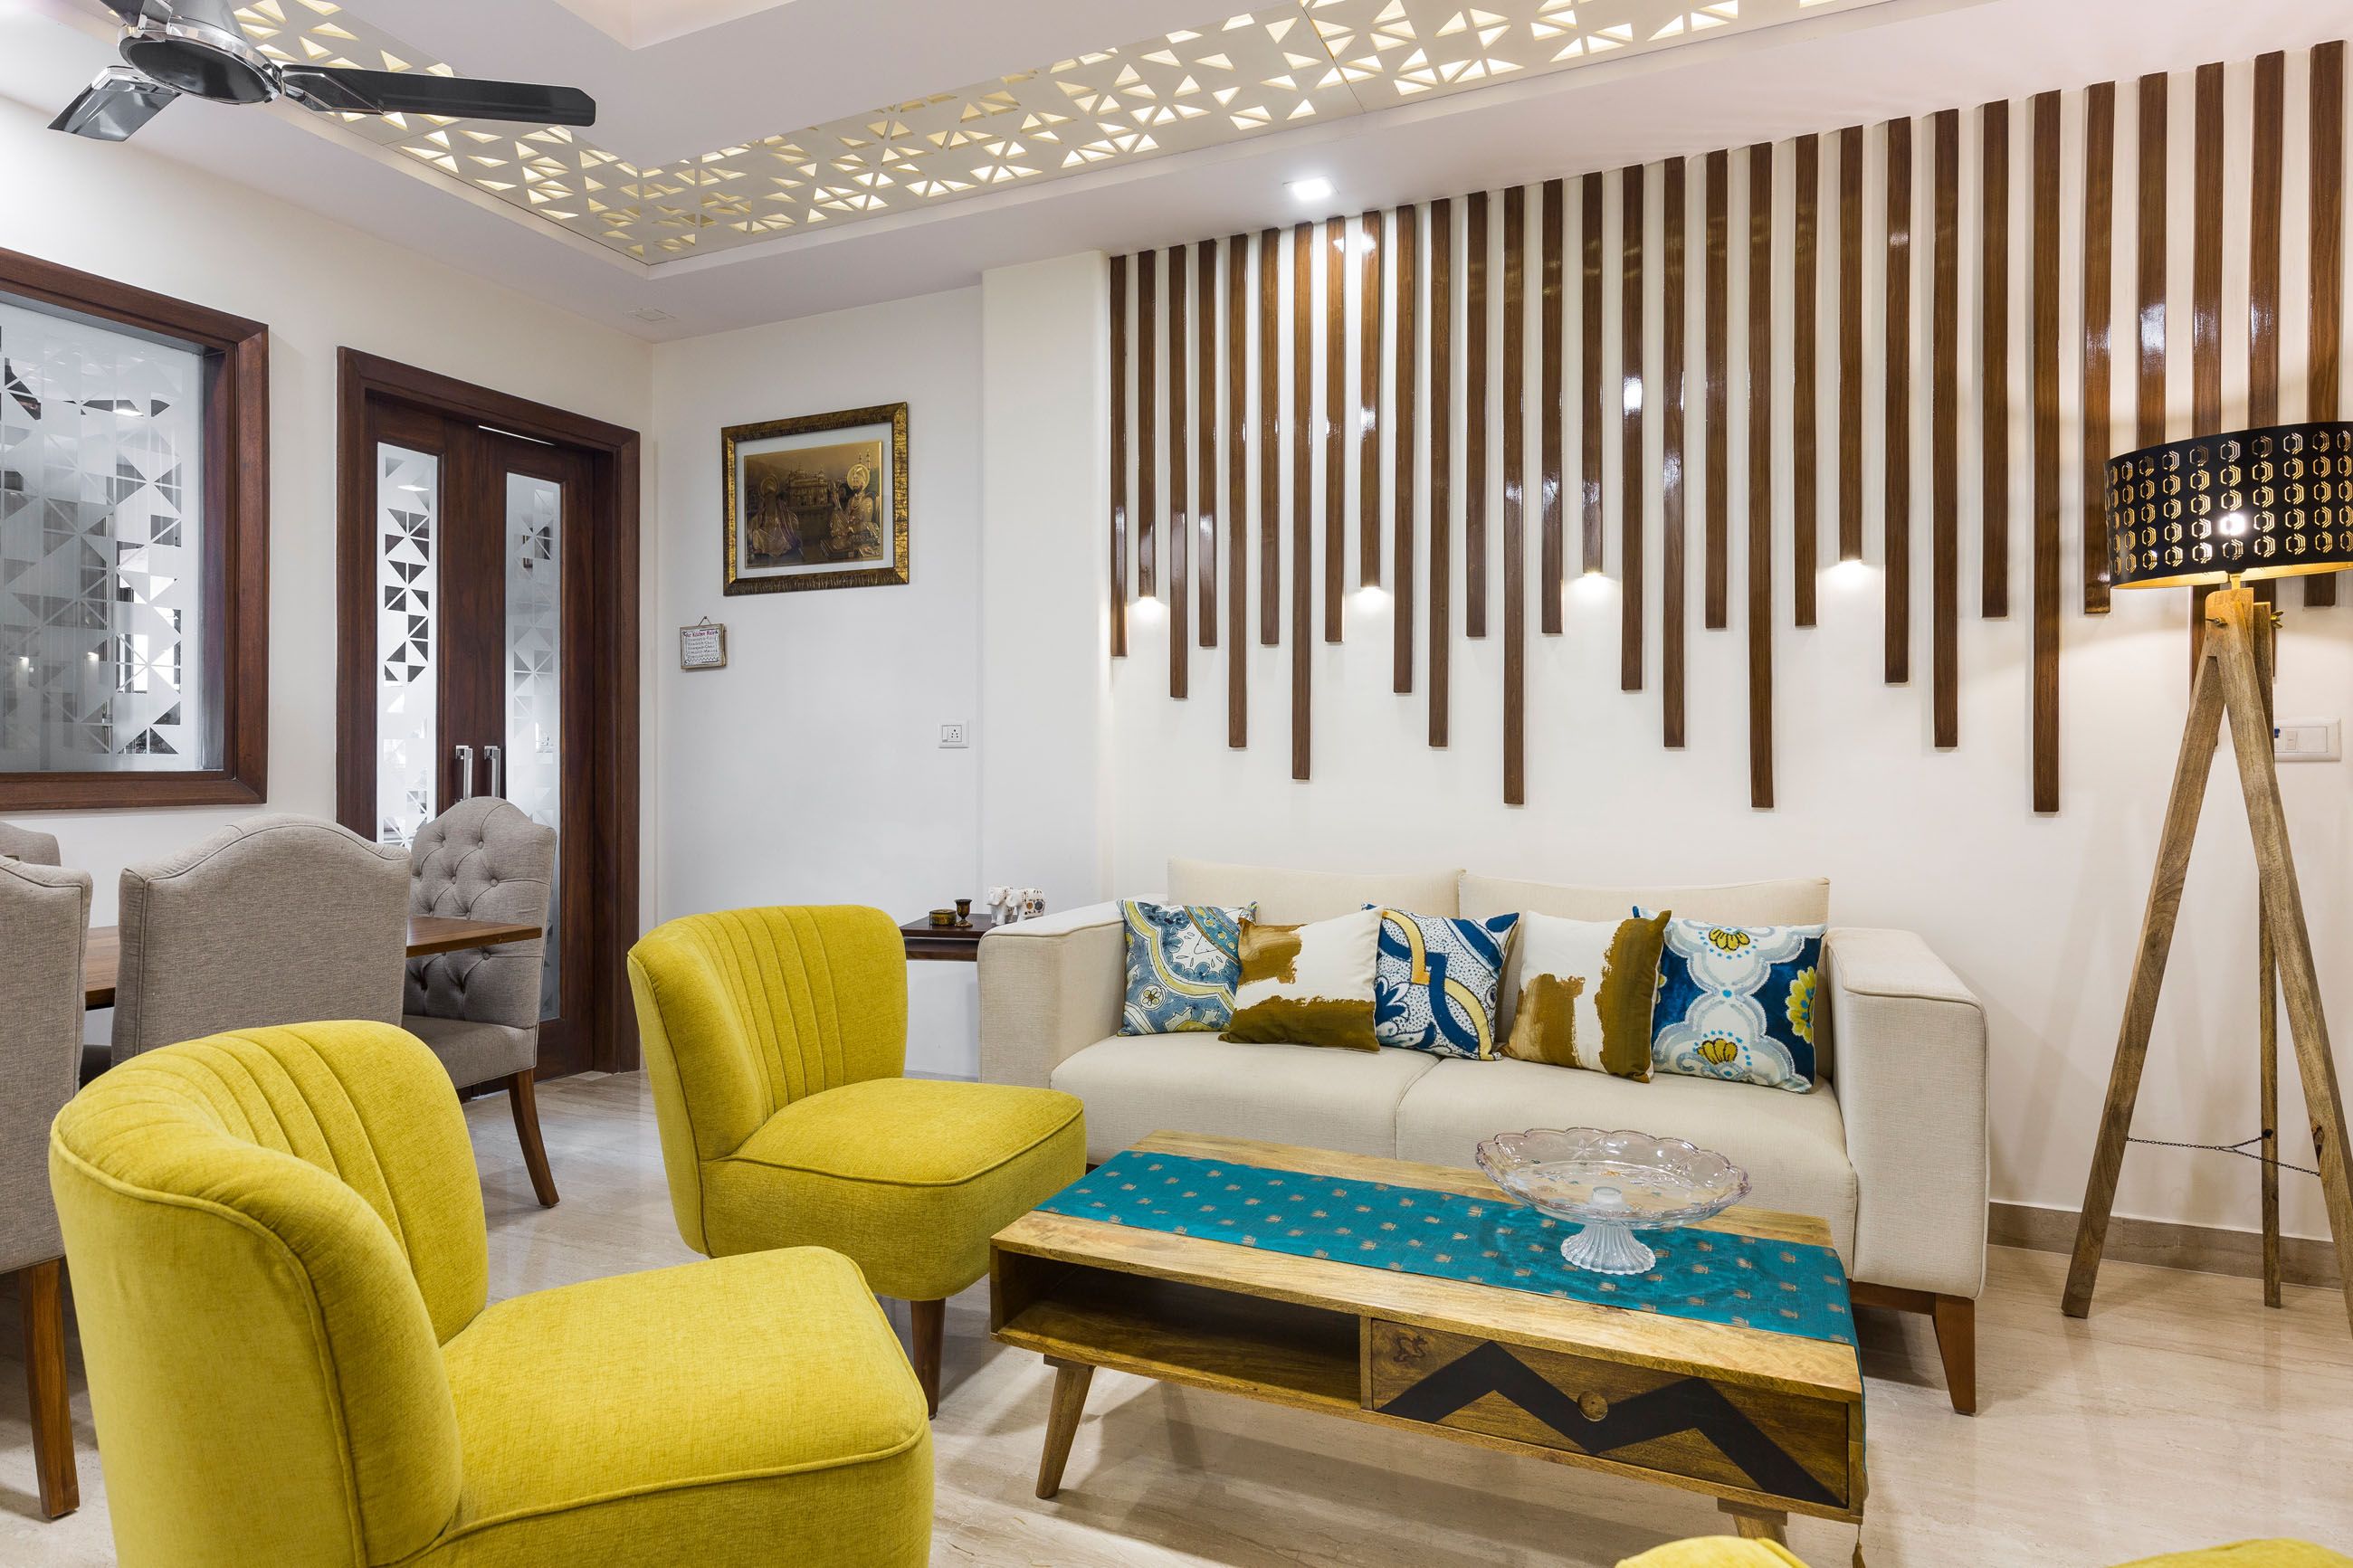 Classic 3-BHK Interior Design In Delhi With Vibrant Living Room Design